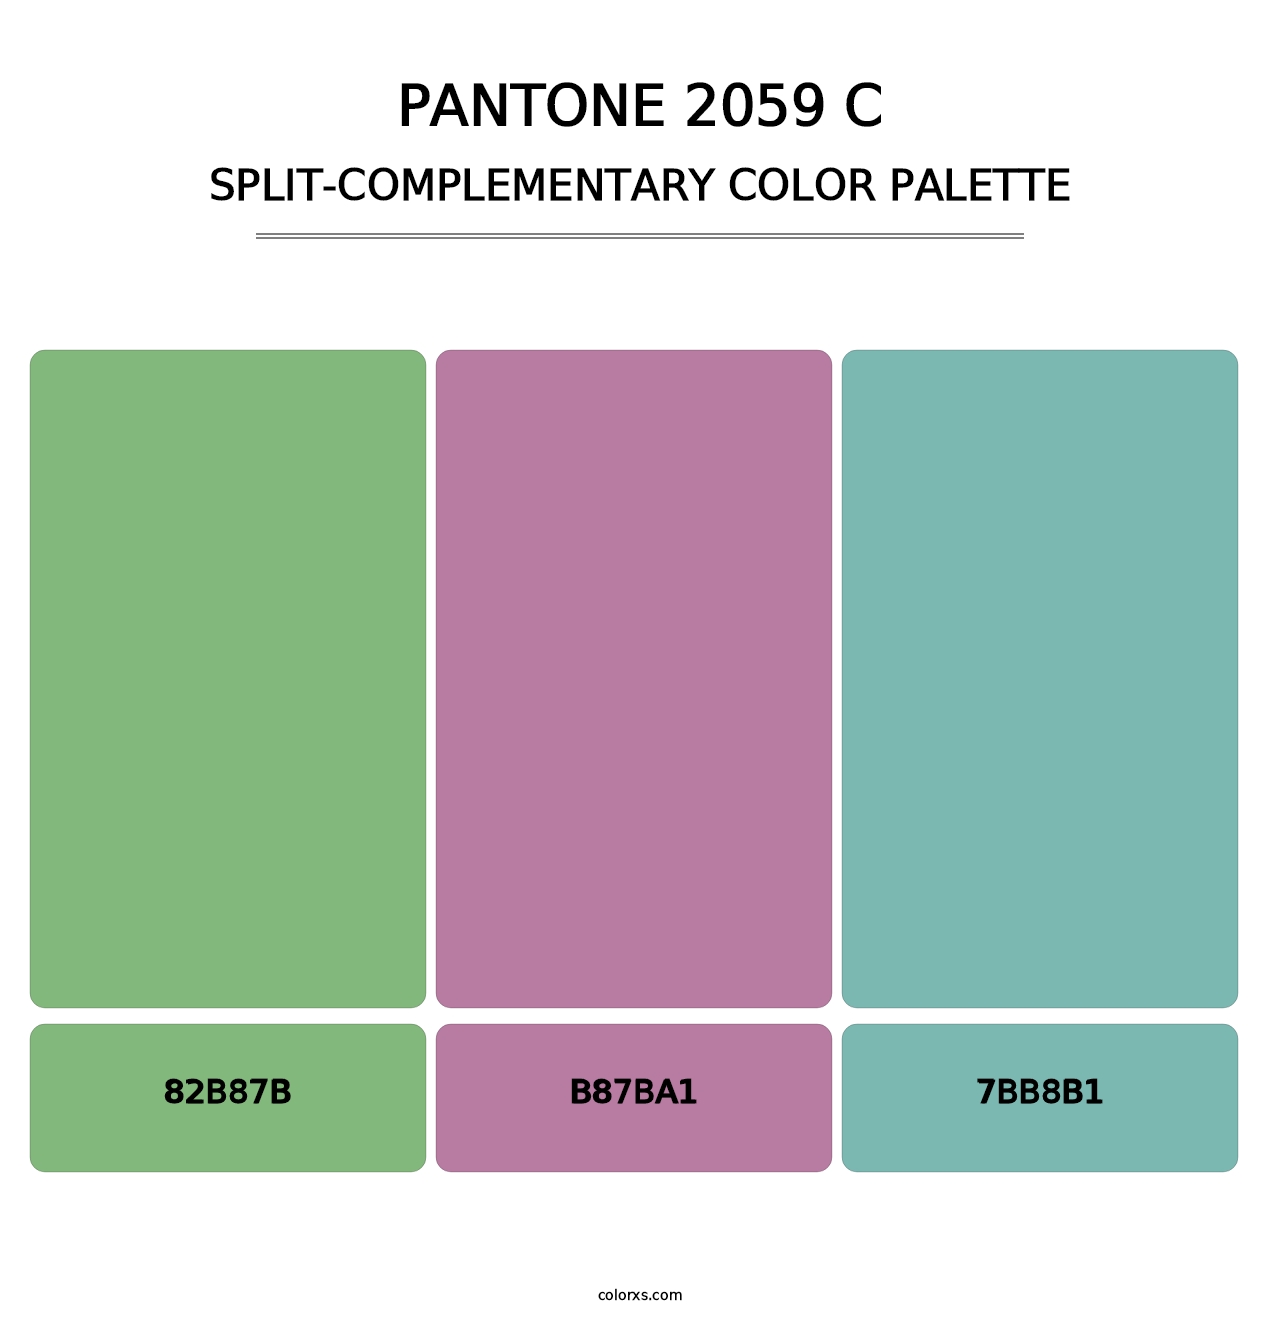 PANTONE 2059 C - Split-Complementary Color Palette